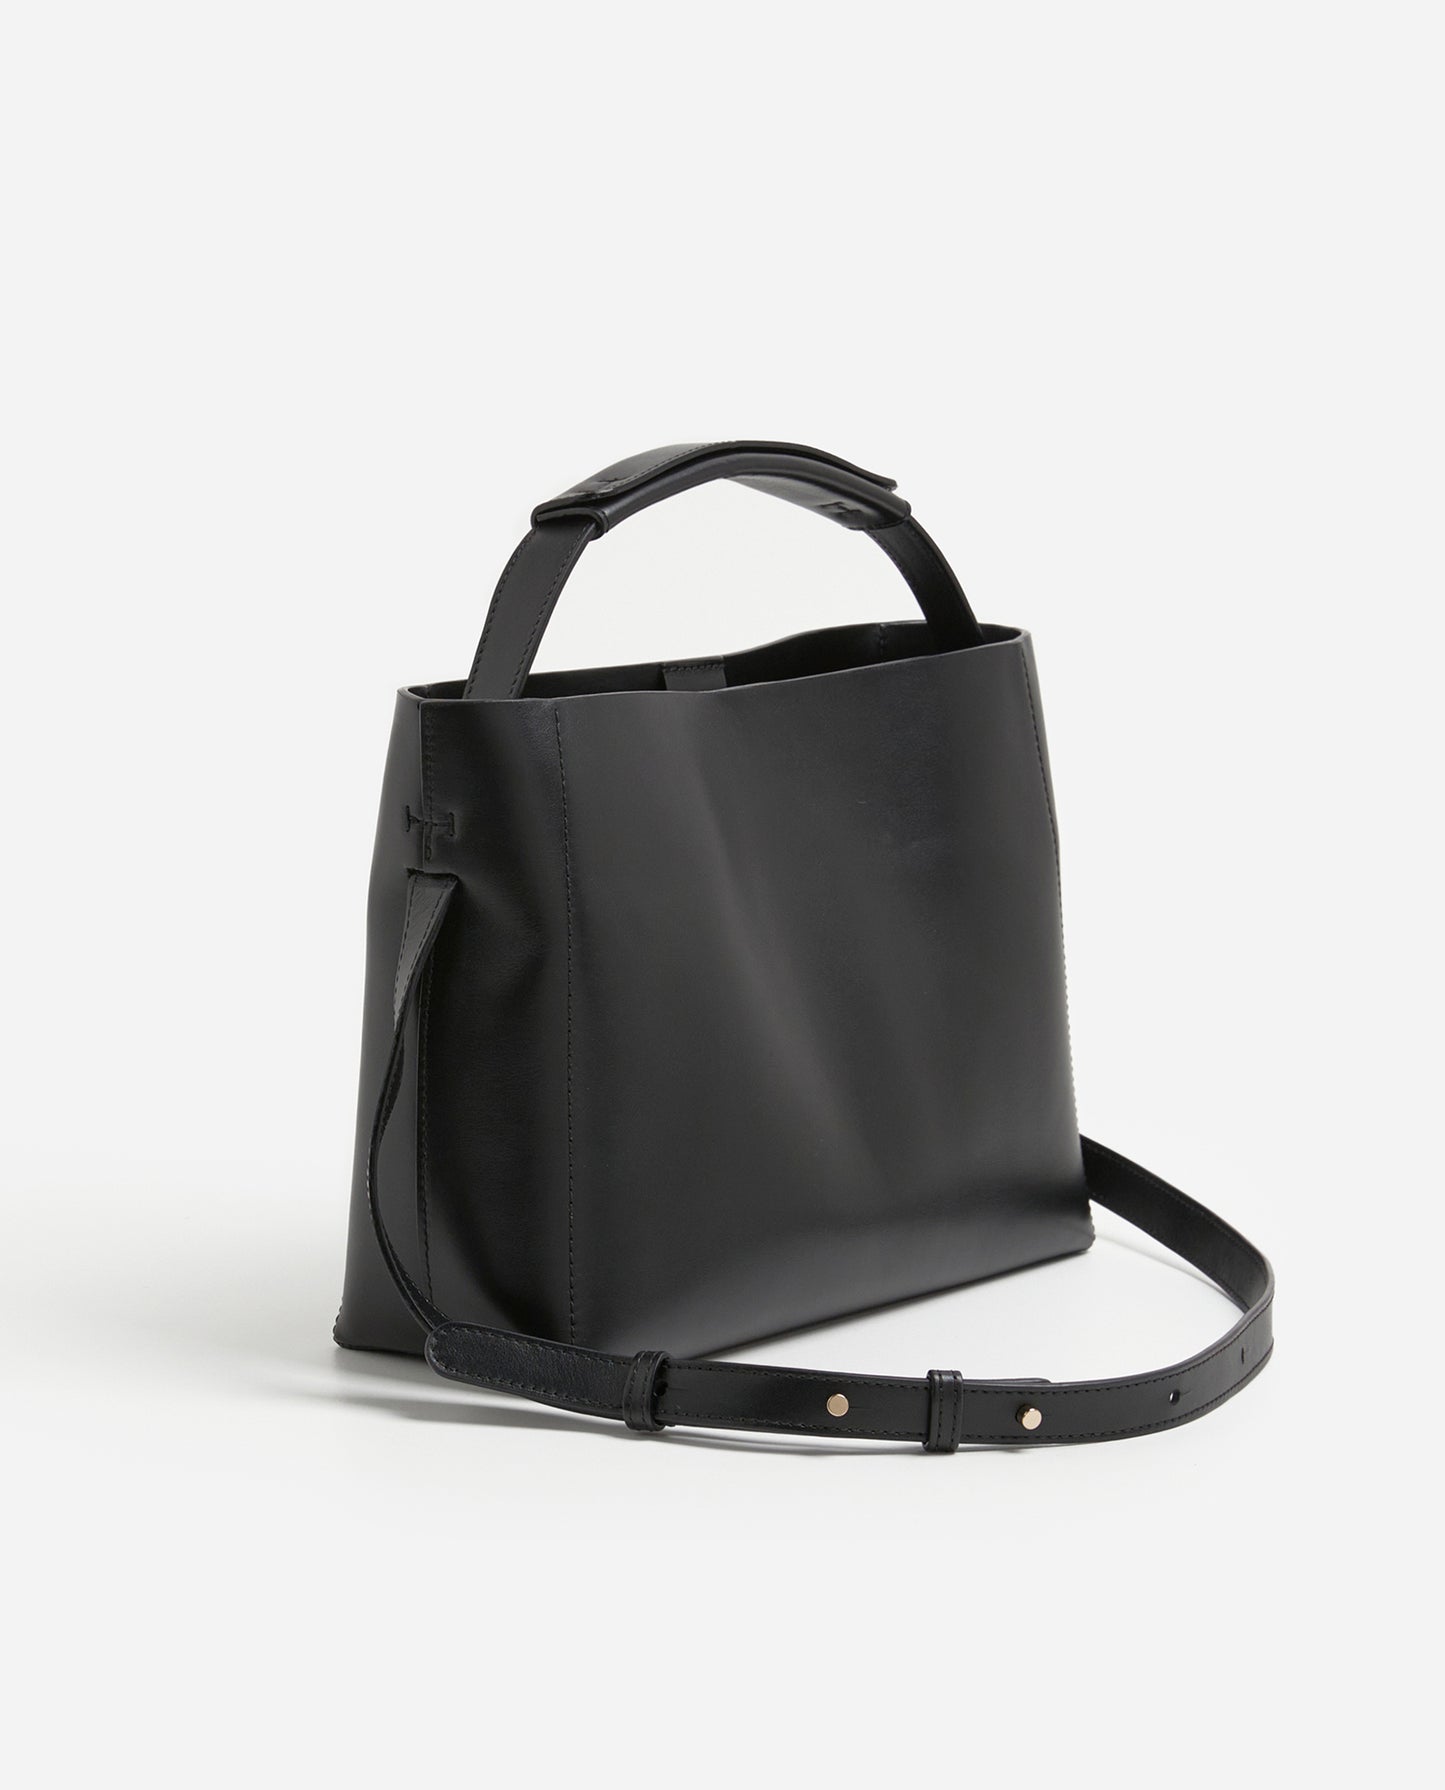 Hedda Grande Handbag Black Leather